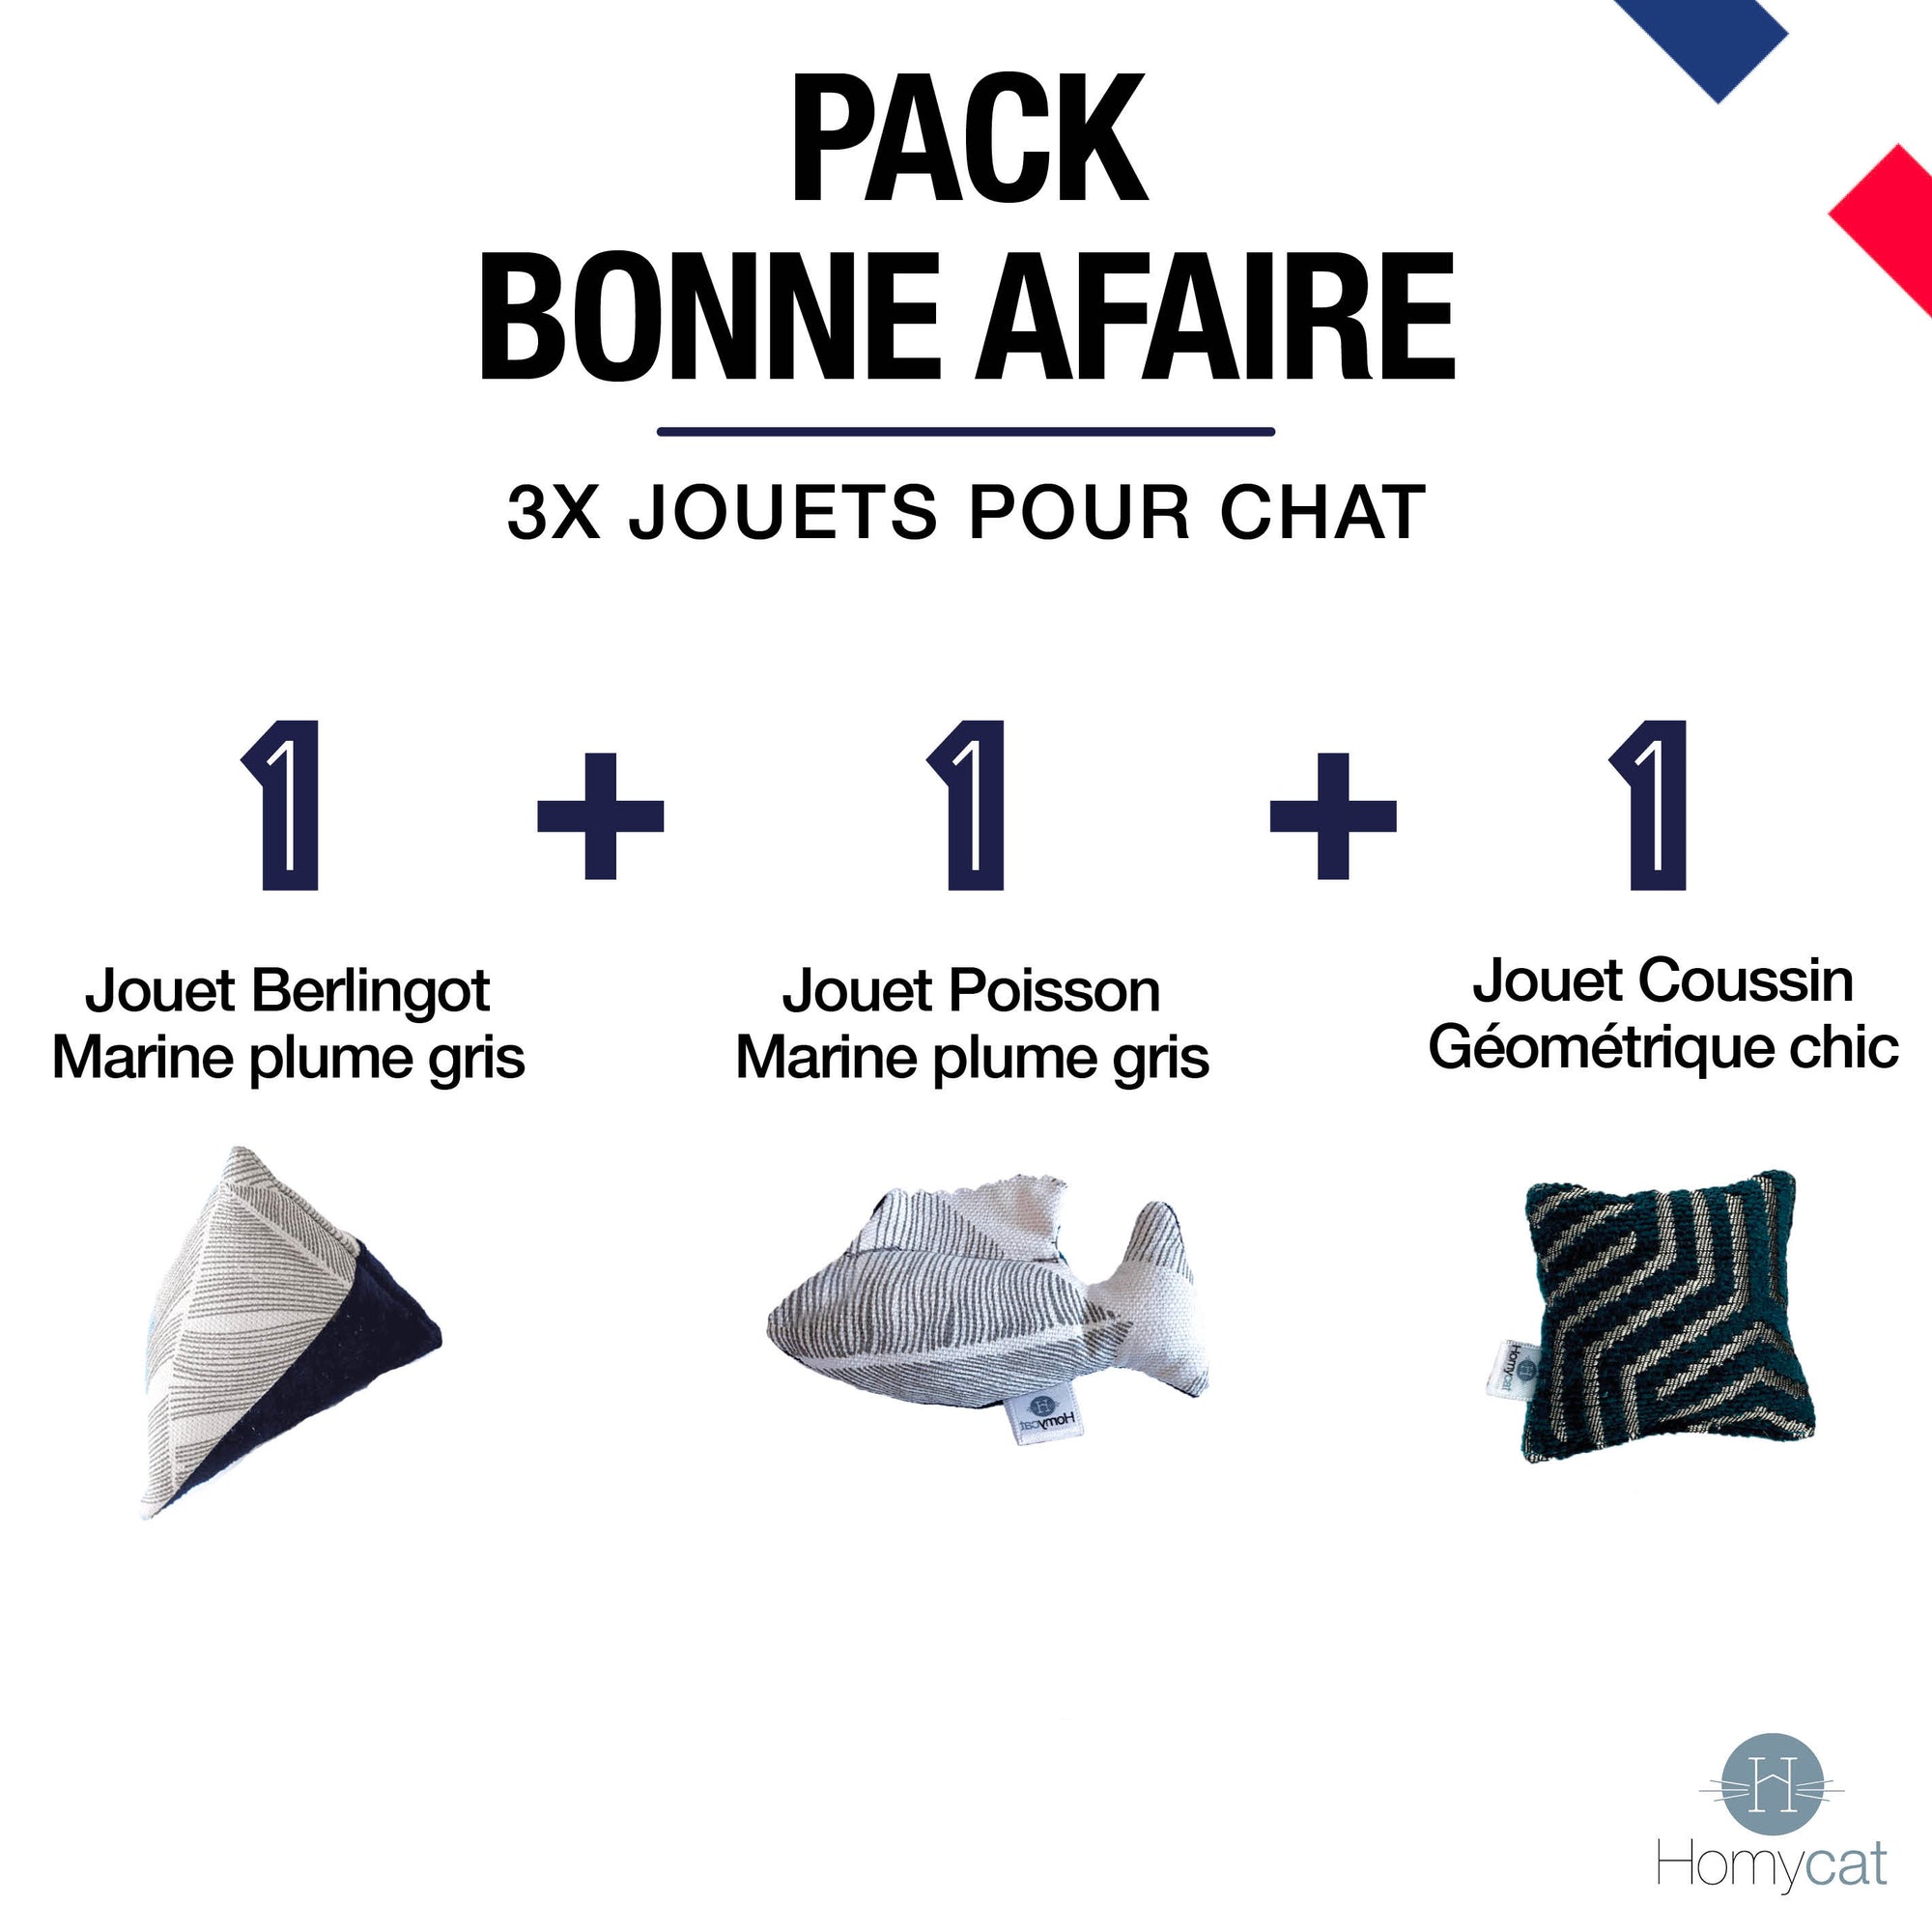 Pack Bonne Affaire - 1 Jouet Poisson + 1 Jouet Berlingot + 1 Jouet mini Coussin